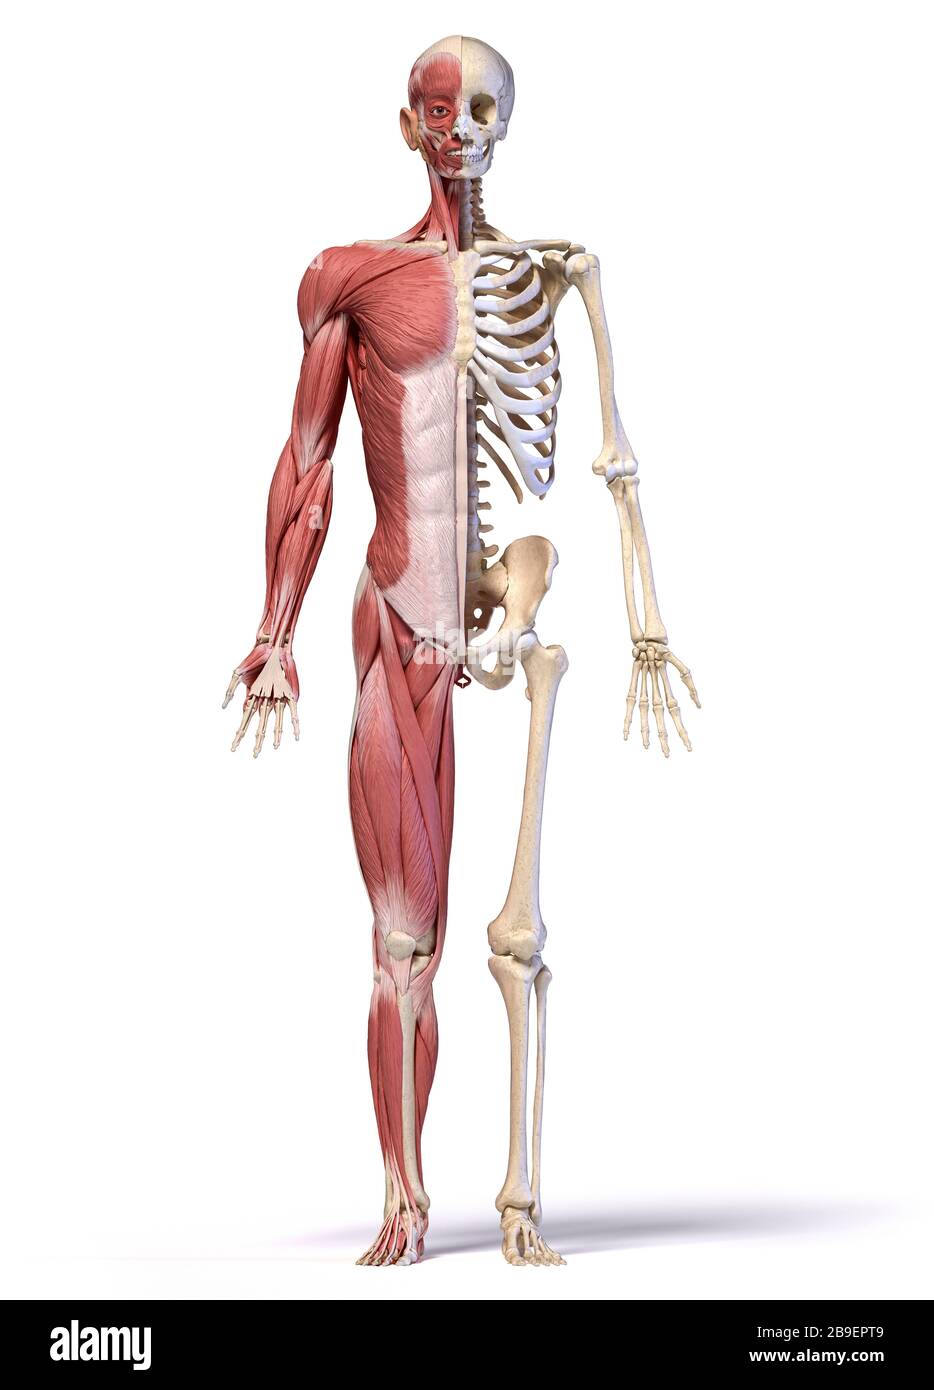 Anatomie der menschlichen männlichen Muskel- und Skelettsysteme, Vorderansicht, weißer Hintergrund. Stockfoto